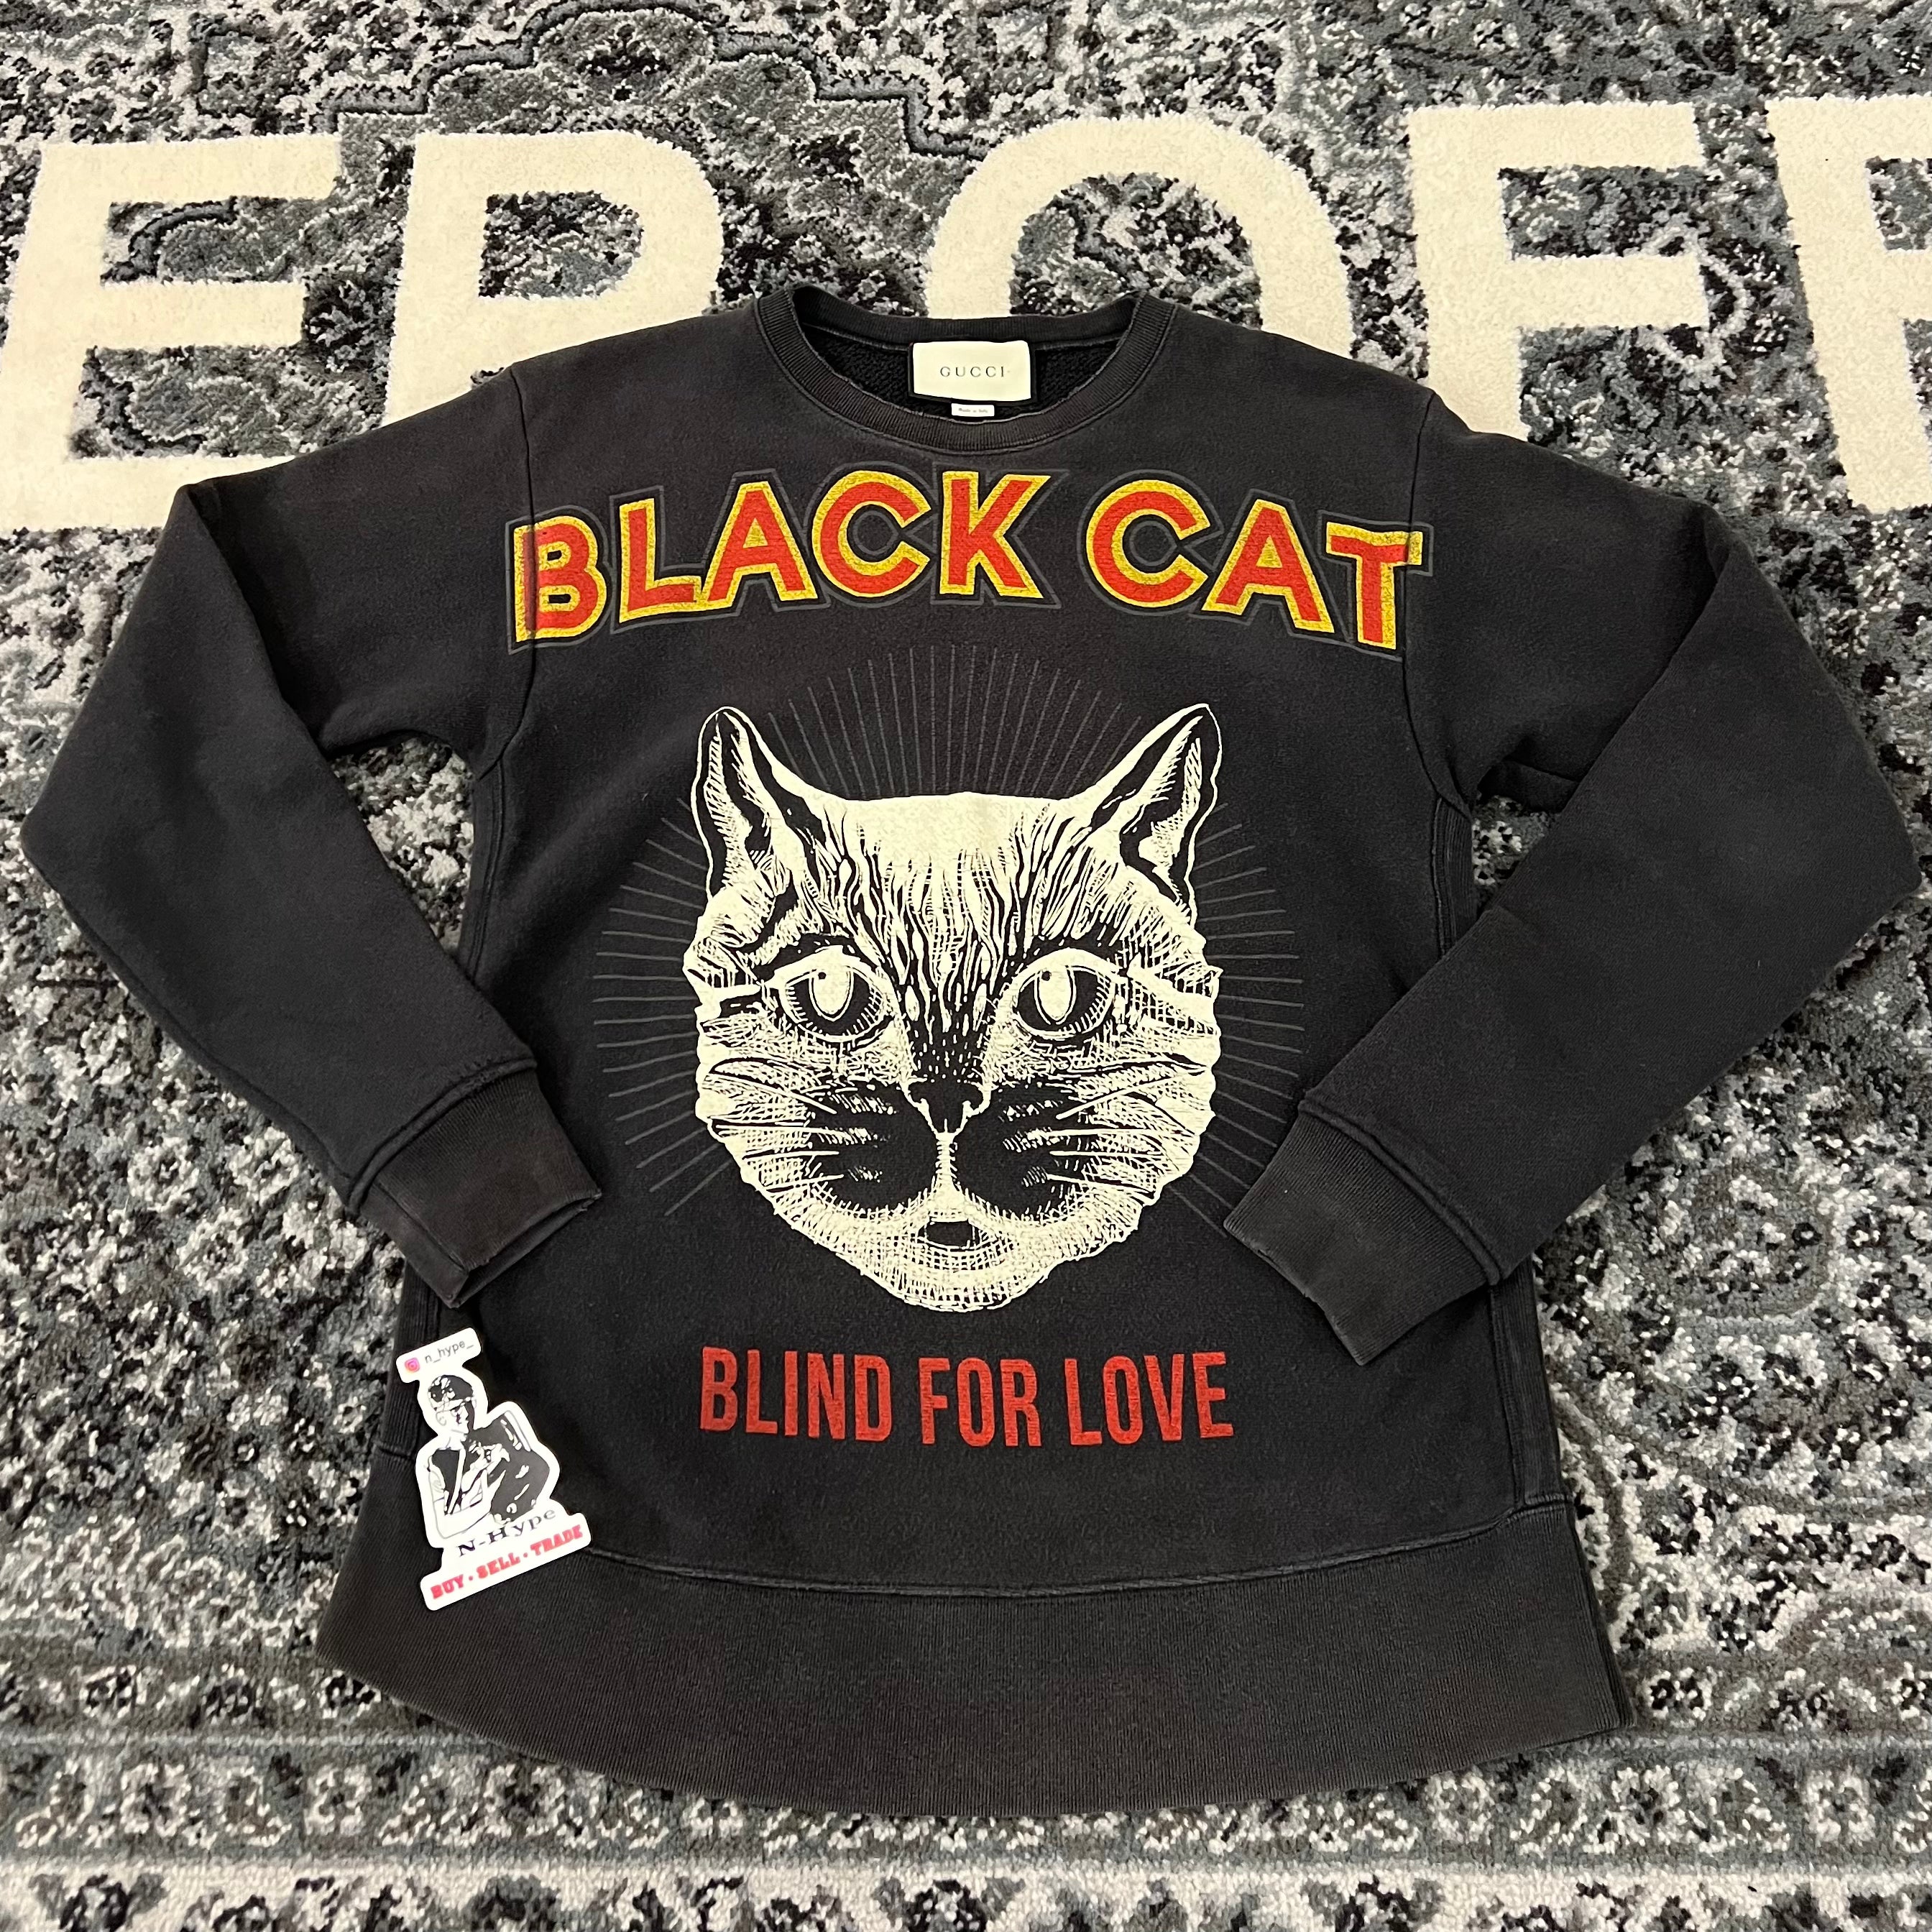 Gucci Baumwoll-Sweatshirt mit schwarzem Katzendruck